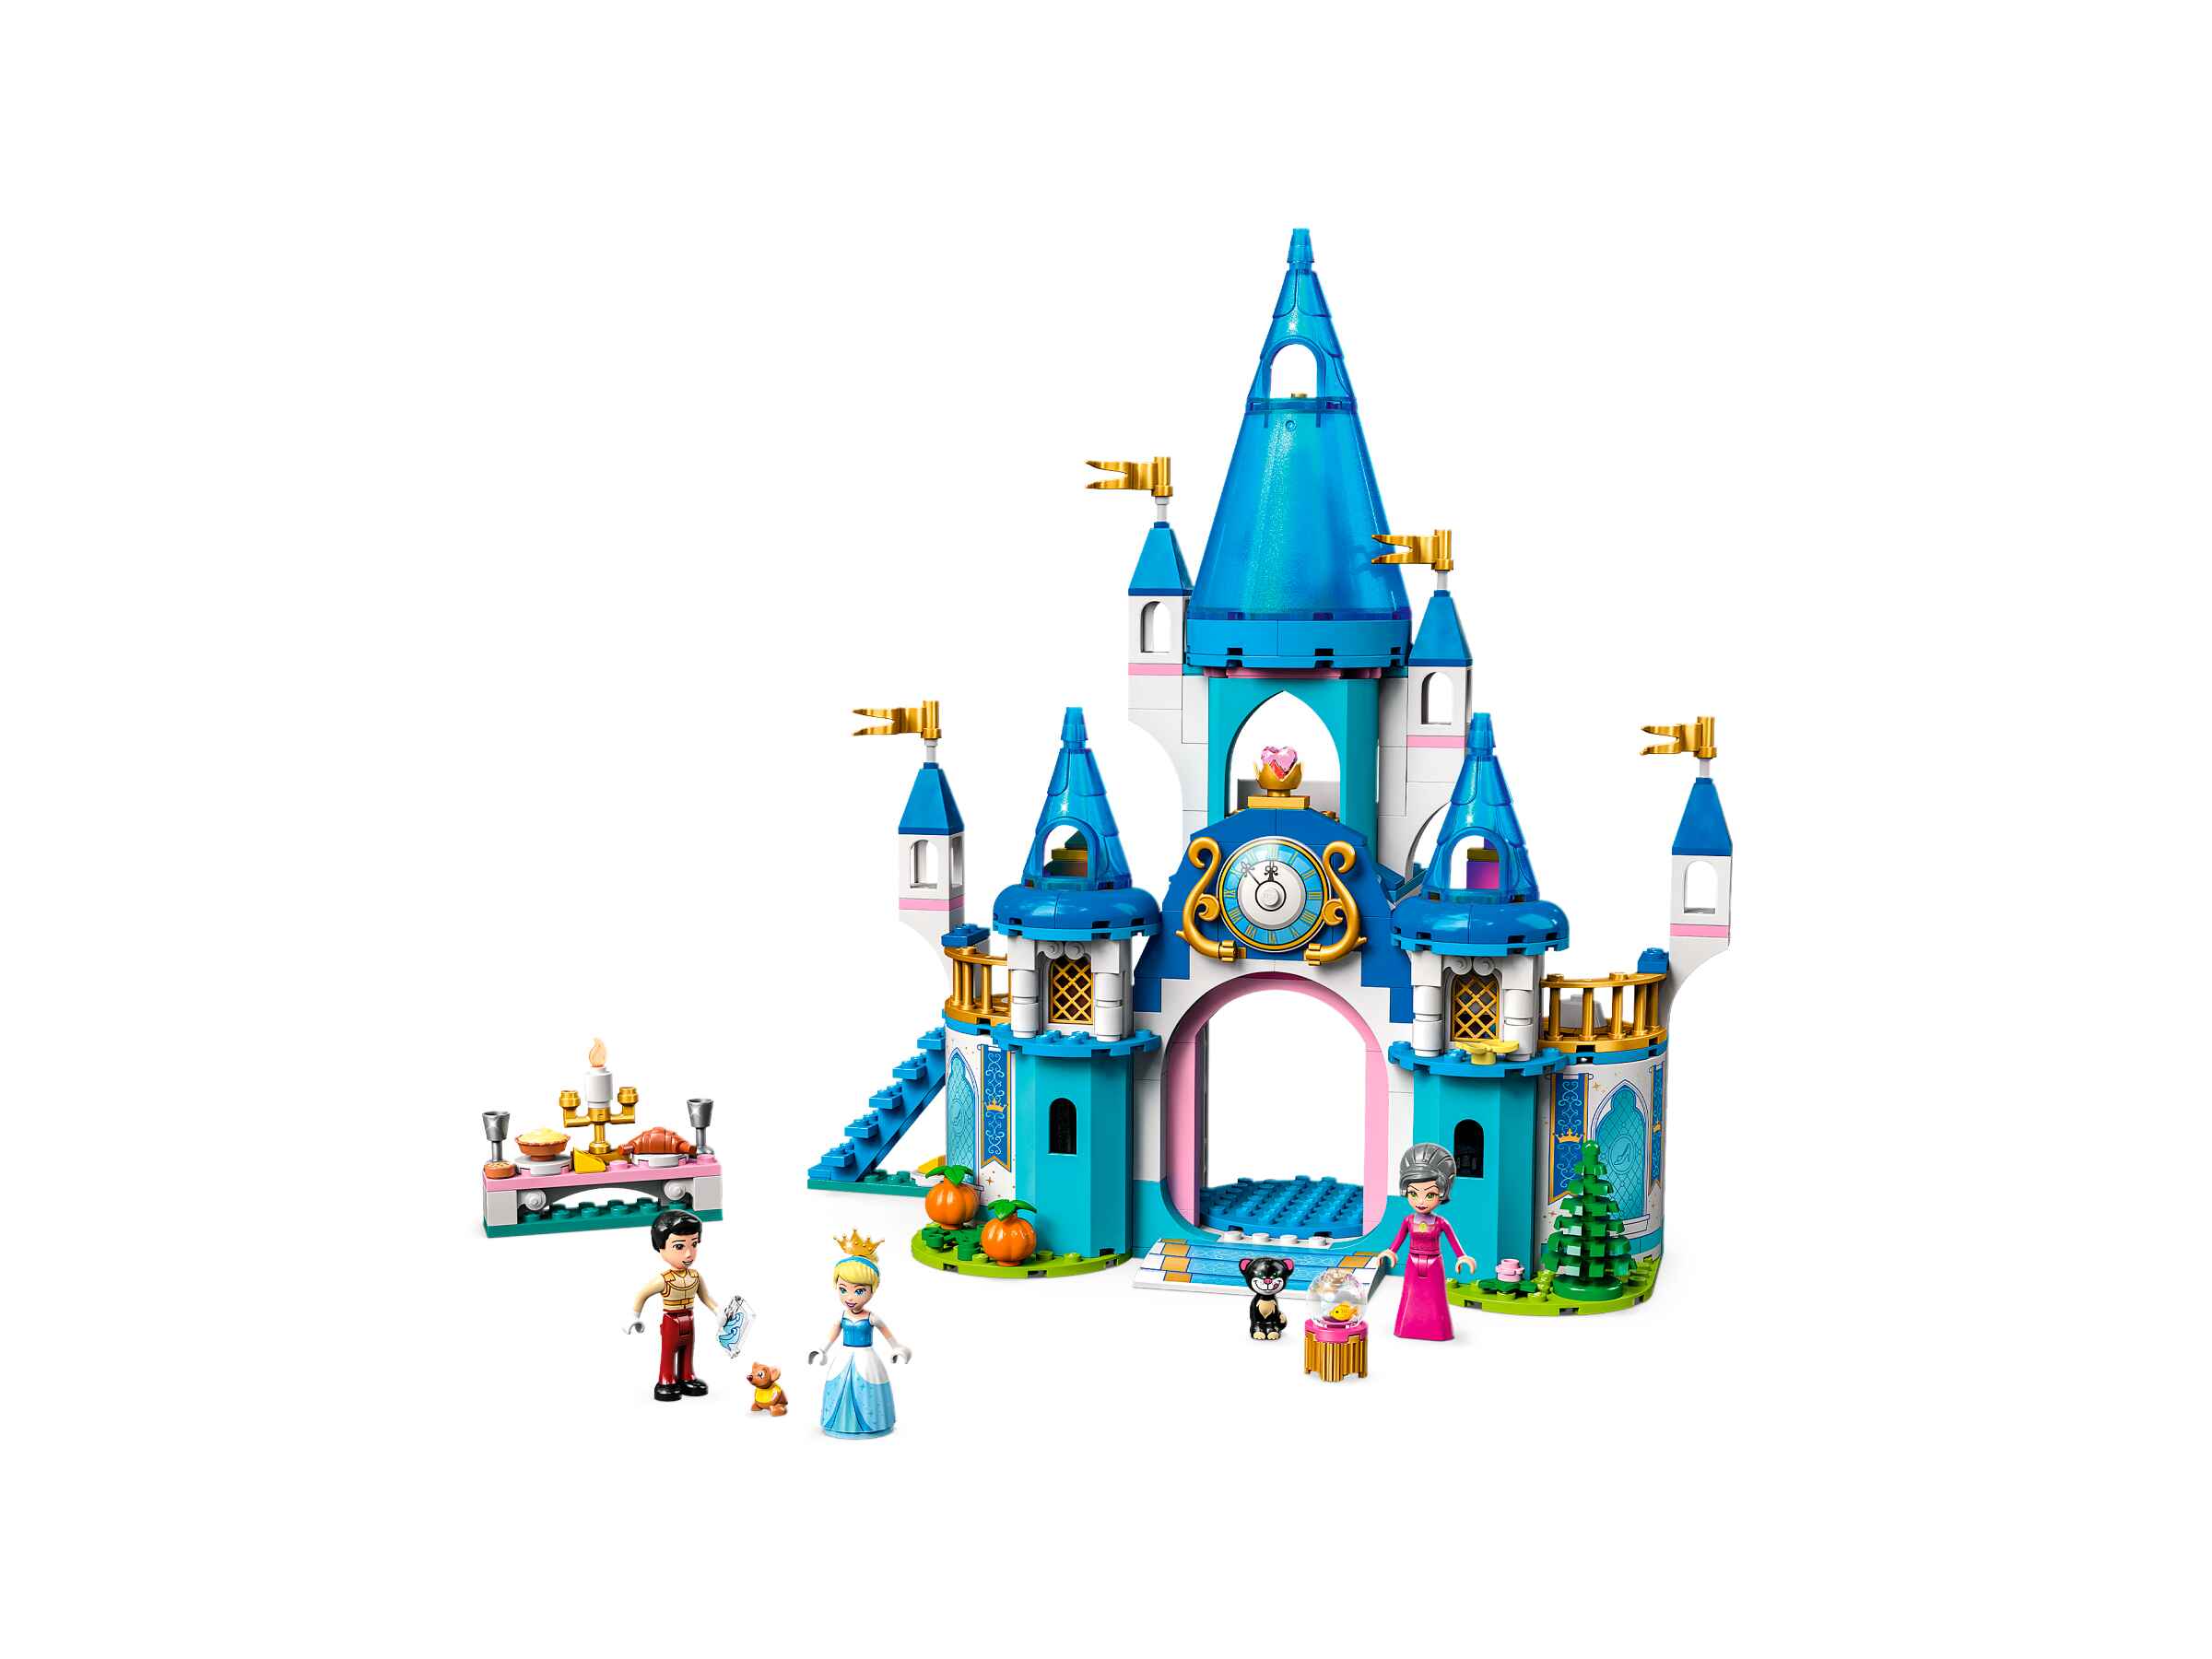 LEGO 43206 Disney Cinderellas Schloss, 3 Spielfiguren und 2 Tierfiguren